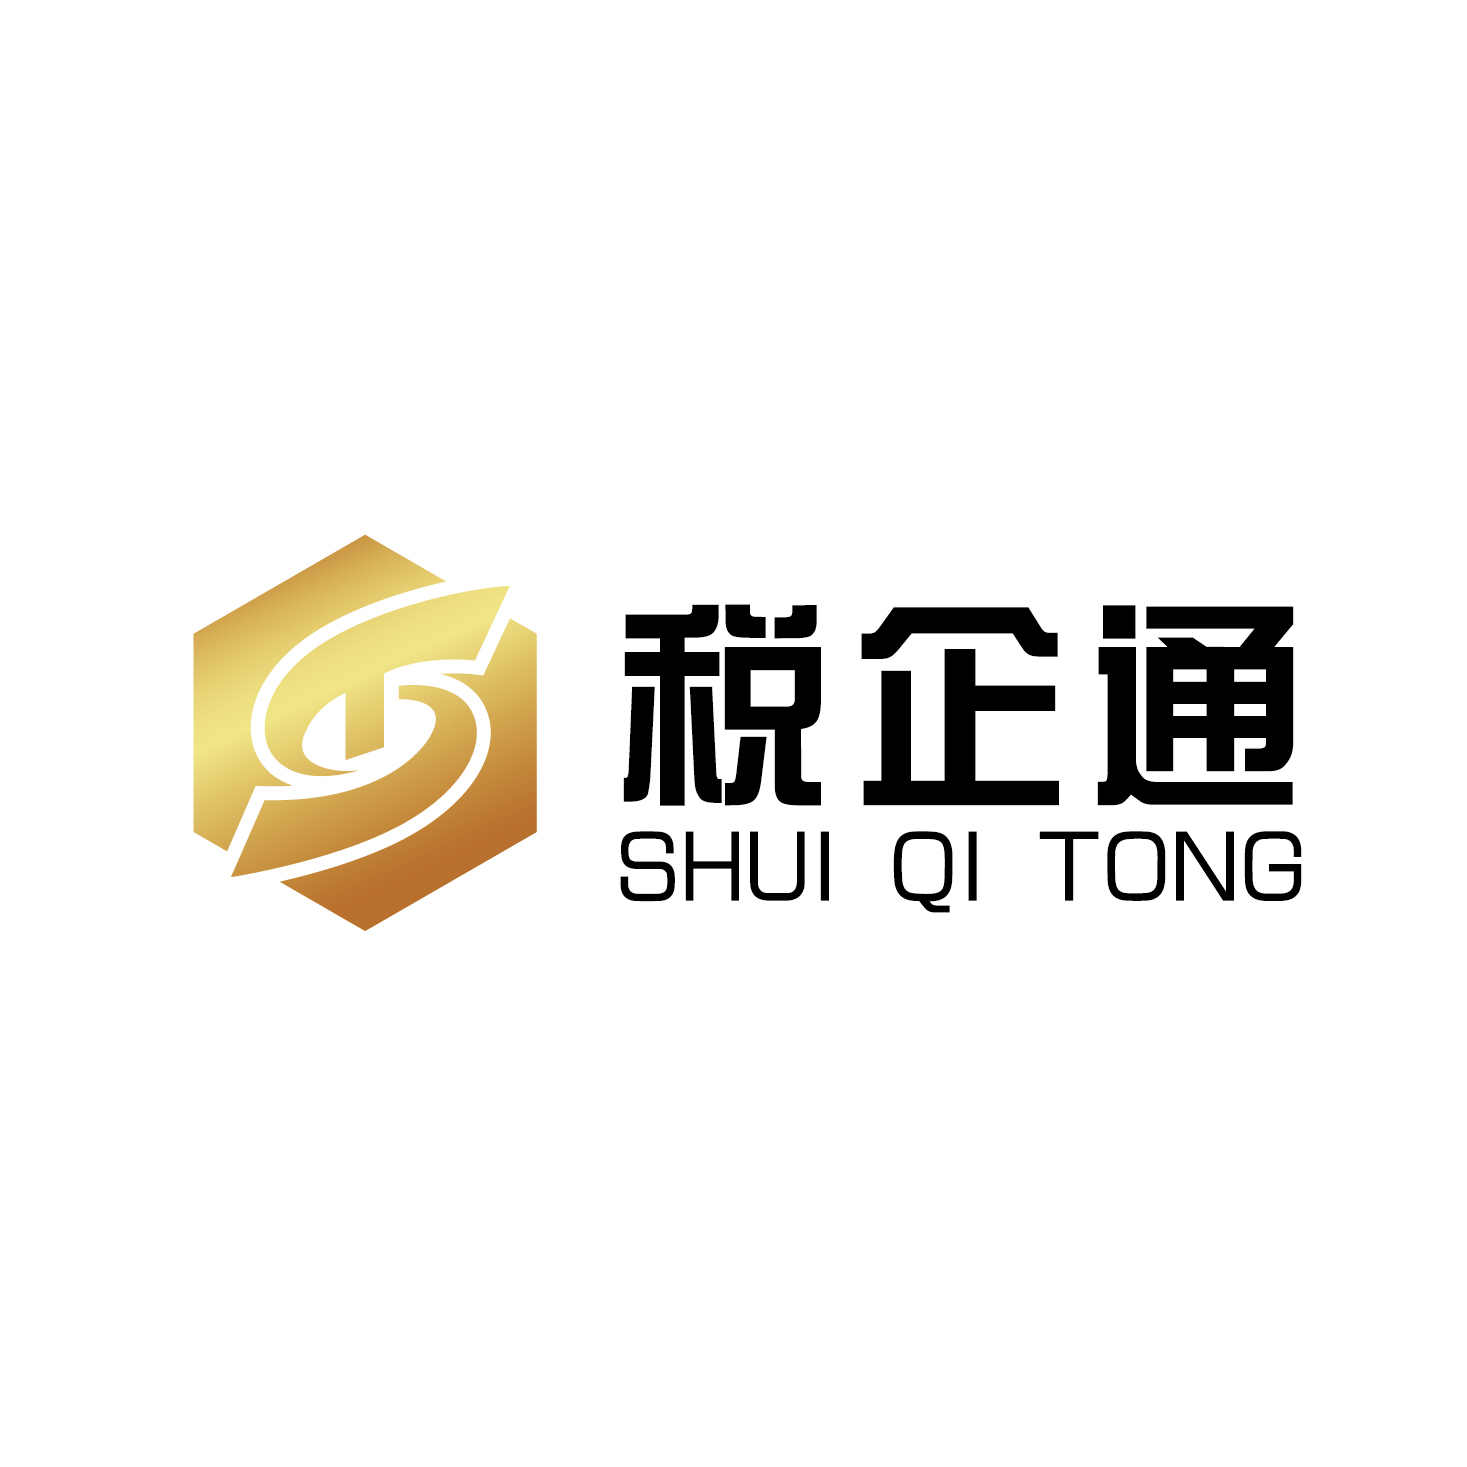 江蘇小算盤財務管理有限公司的logo